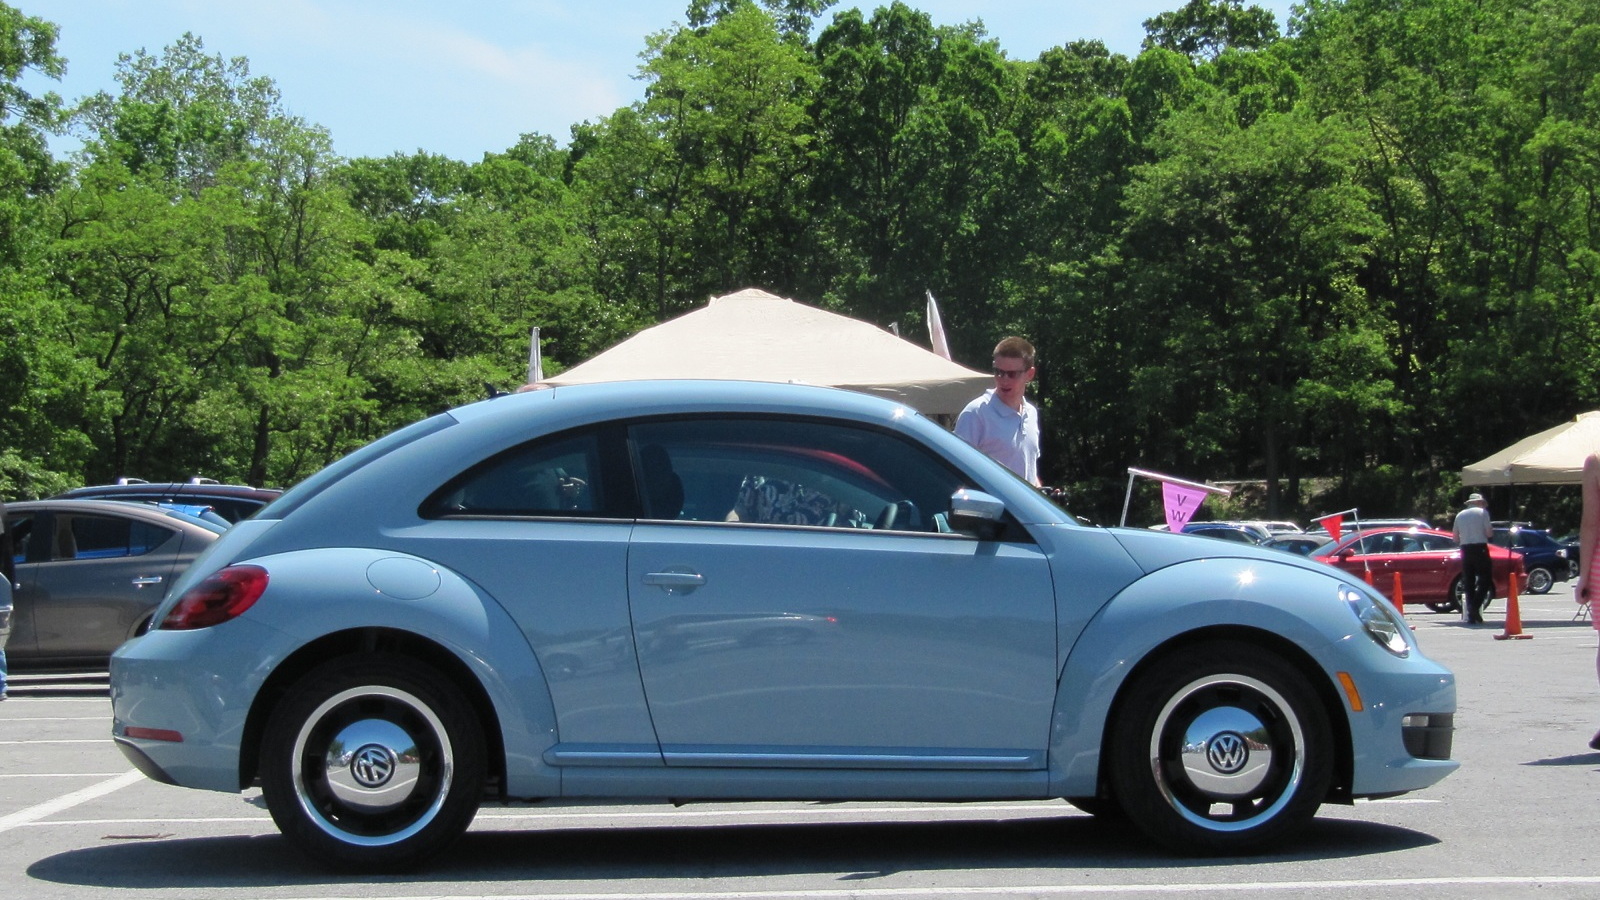 2012 Volkswagen Beetle, Bear Mountain, NY, May 2012